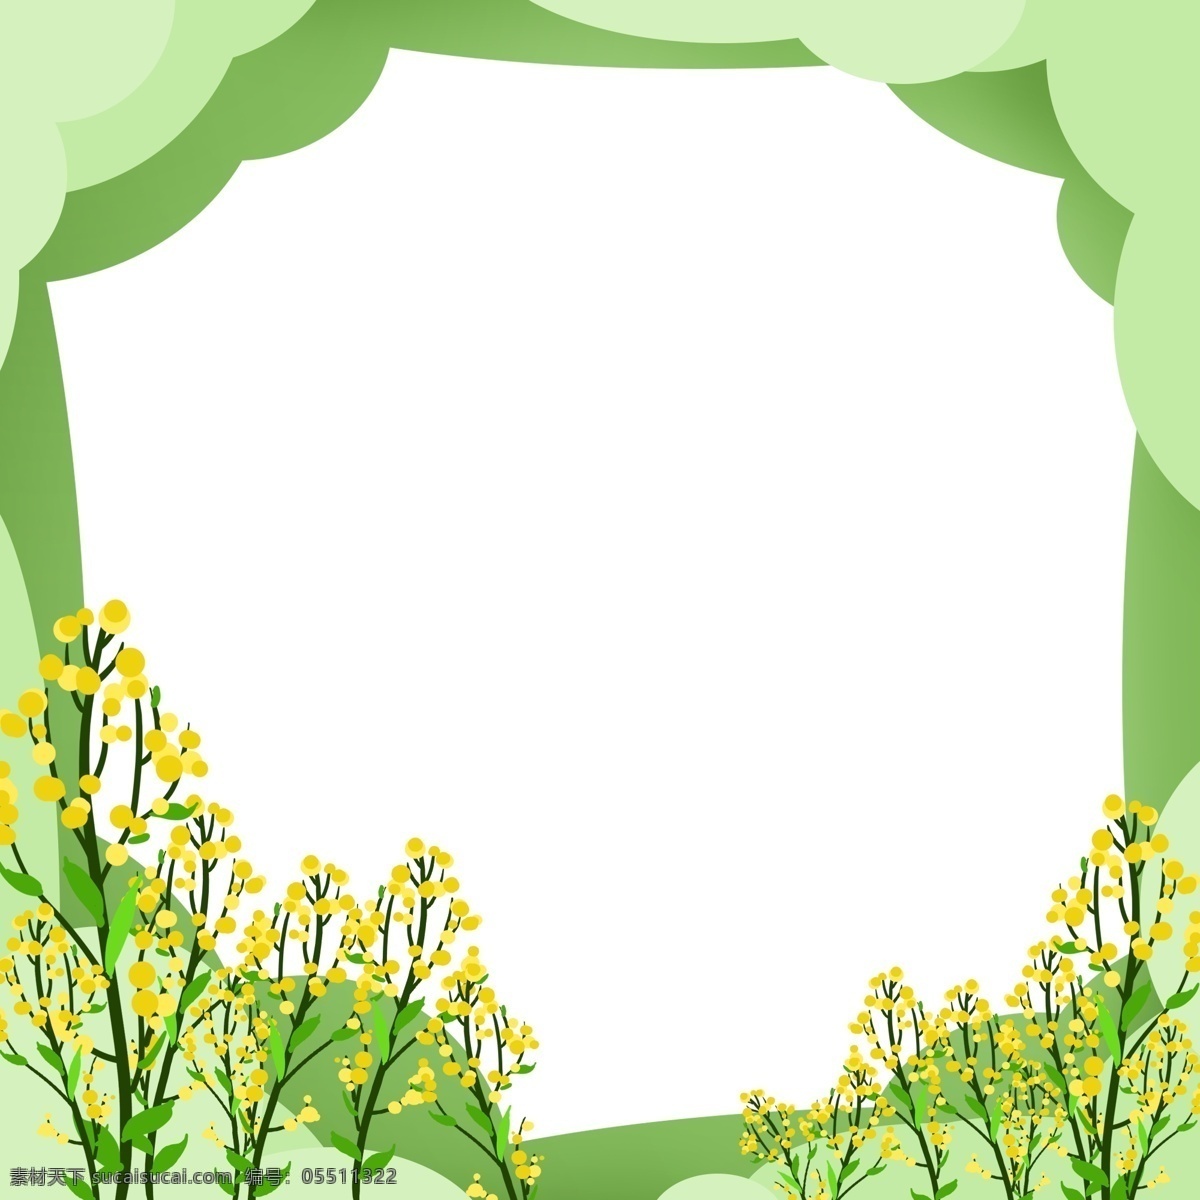 手绘 春季 花朵 边框 黄色的花朵 漂亮的花朵 卡通边框 手绘春季边框 春季景色边框 美丽的花朵